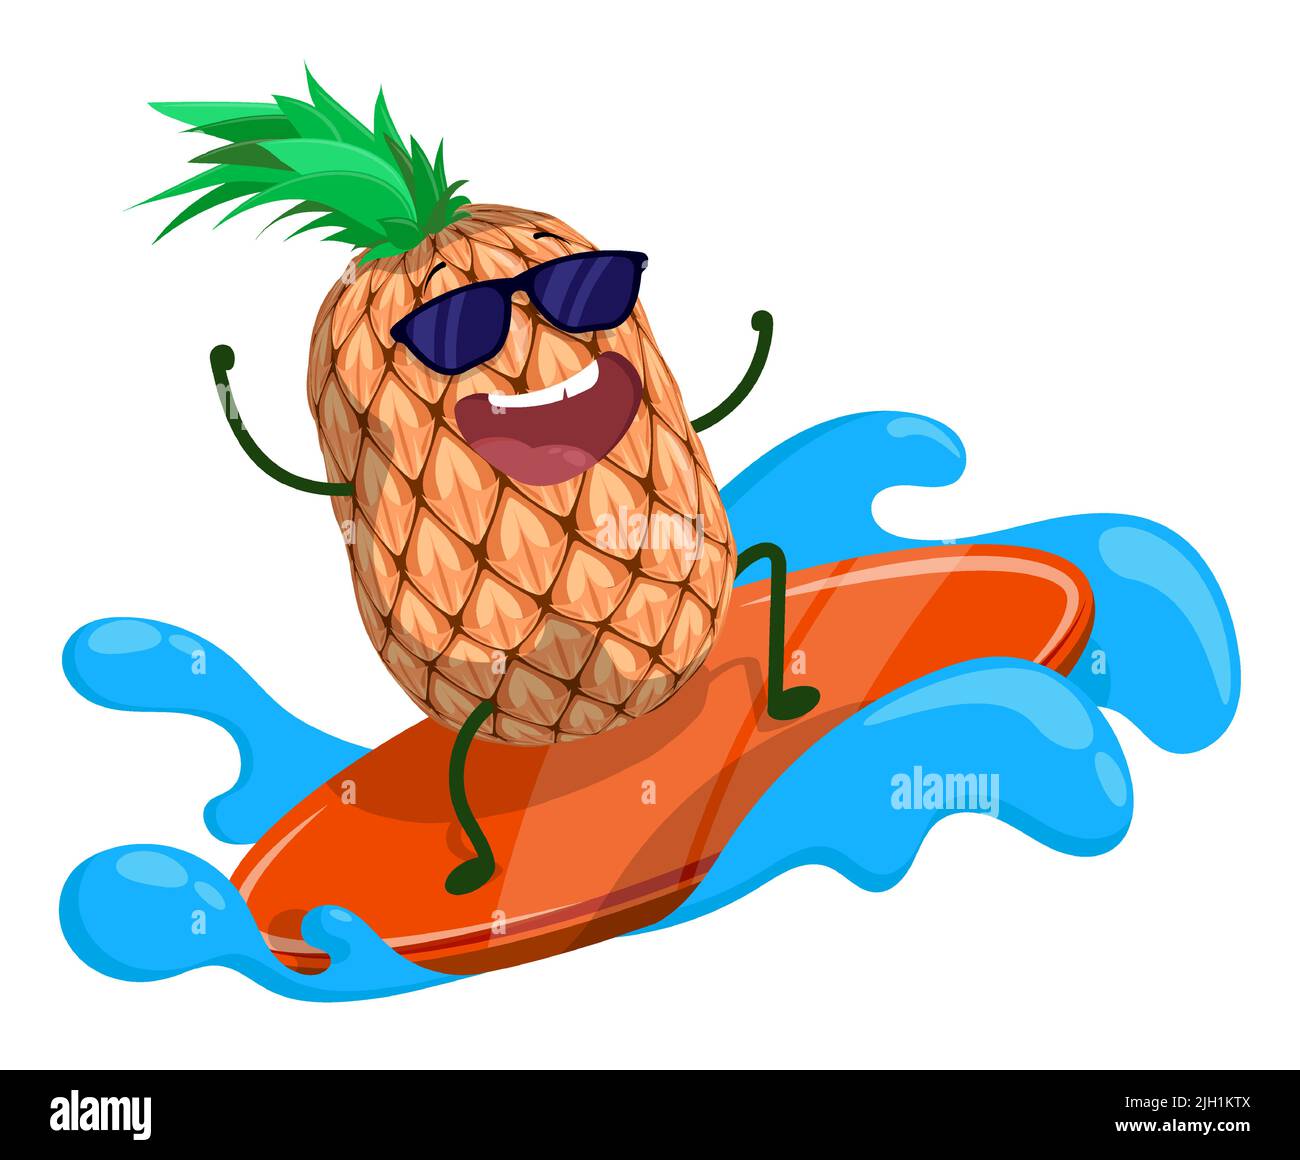 L'ananas gai surfe sur la vague avec la planche de surf. Des aliments délicieux et sains, des légumes et des fruits. Un mode de vie sain. Vecteur de dessin animé isolé sur W Illustration de Vecteur